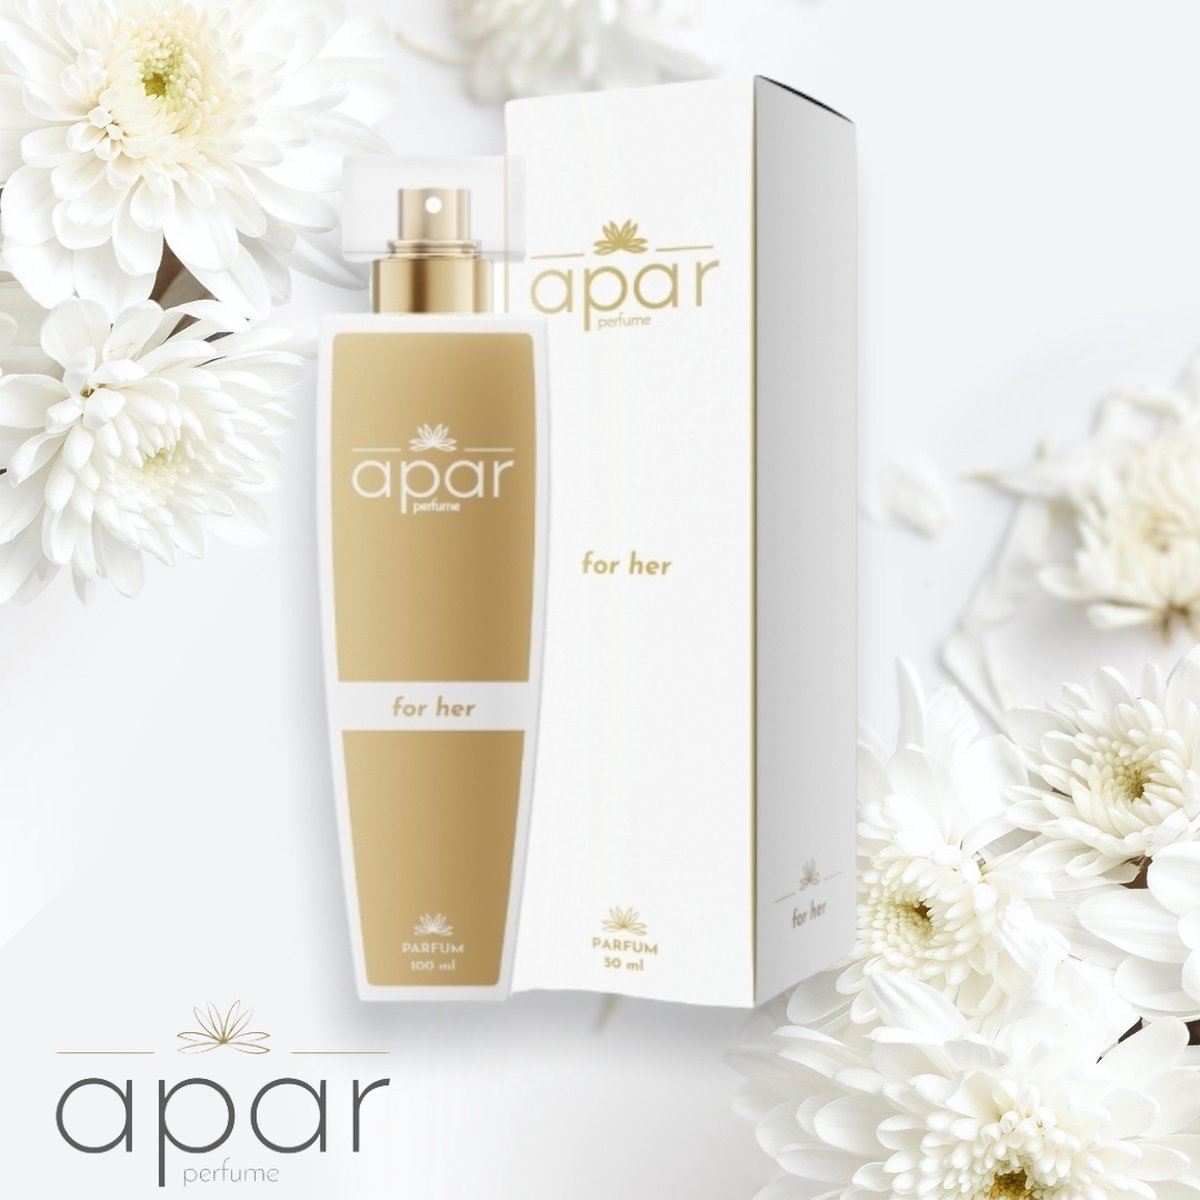 ❤Dure merk geuren voor een eerlijke prijs❤APAR Parfum EDP - 50ml - Nummer F100 Premium -